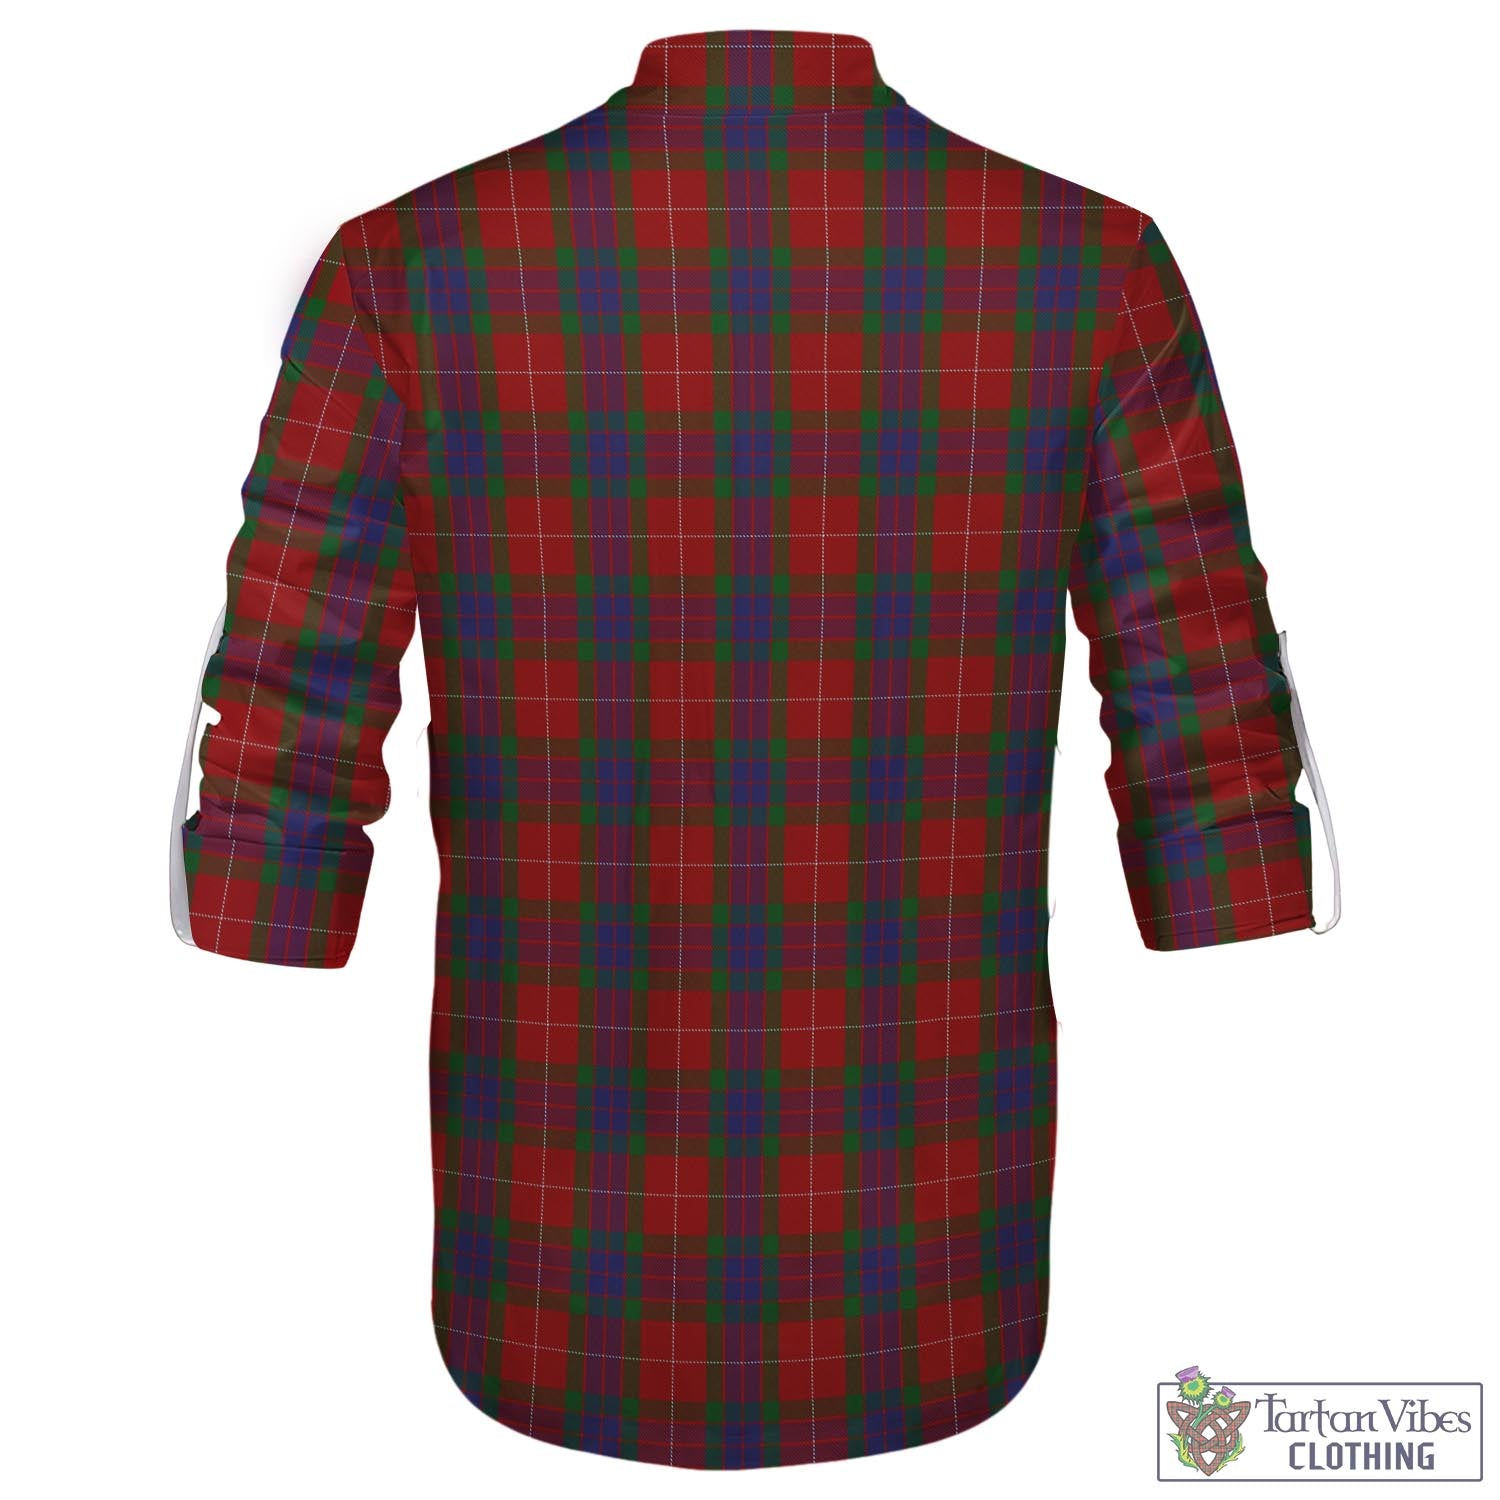 Tartan Vibes Clothing Fraser Tartan Men's Scottish Traditional Jacobite Ghillie Kilt Shirt with Family Crest